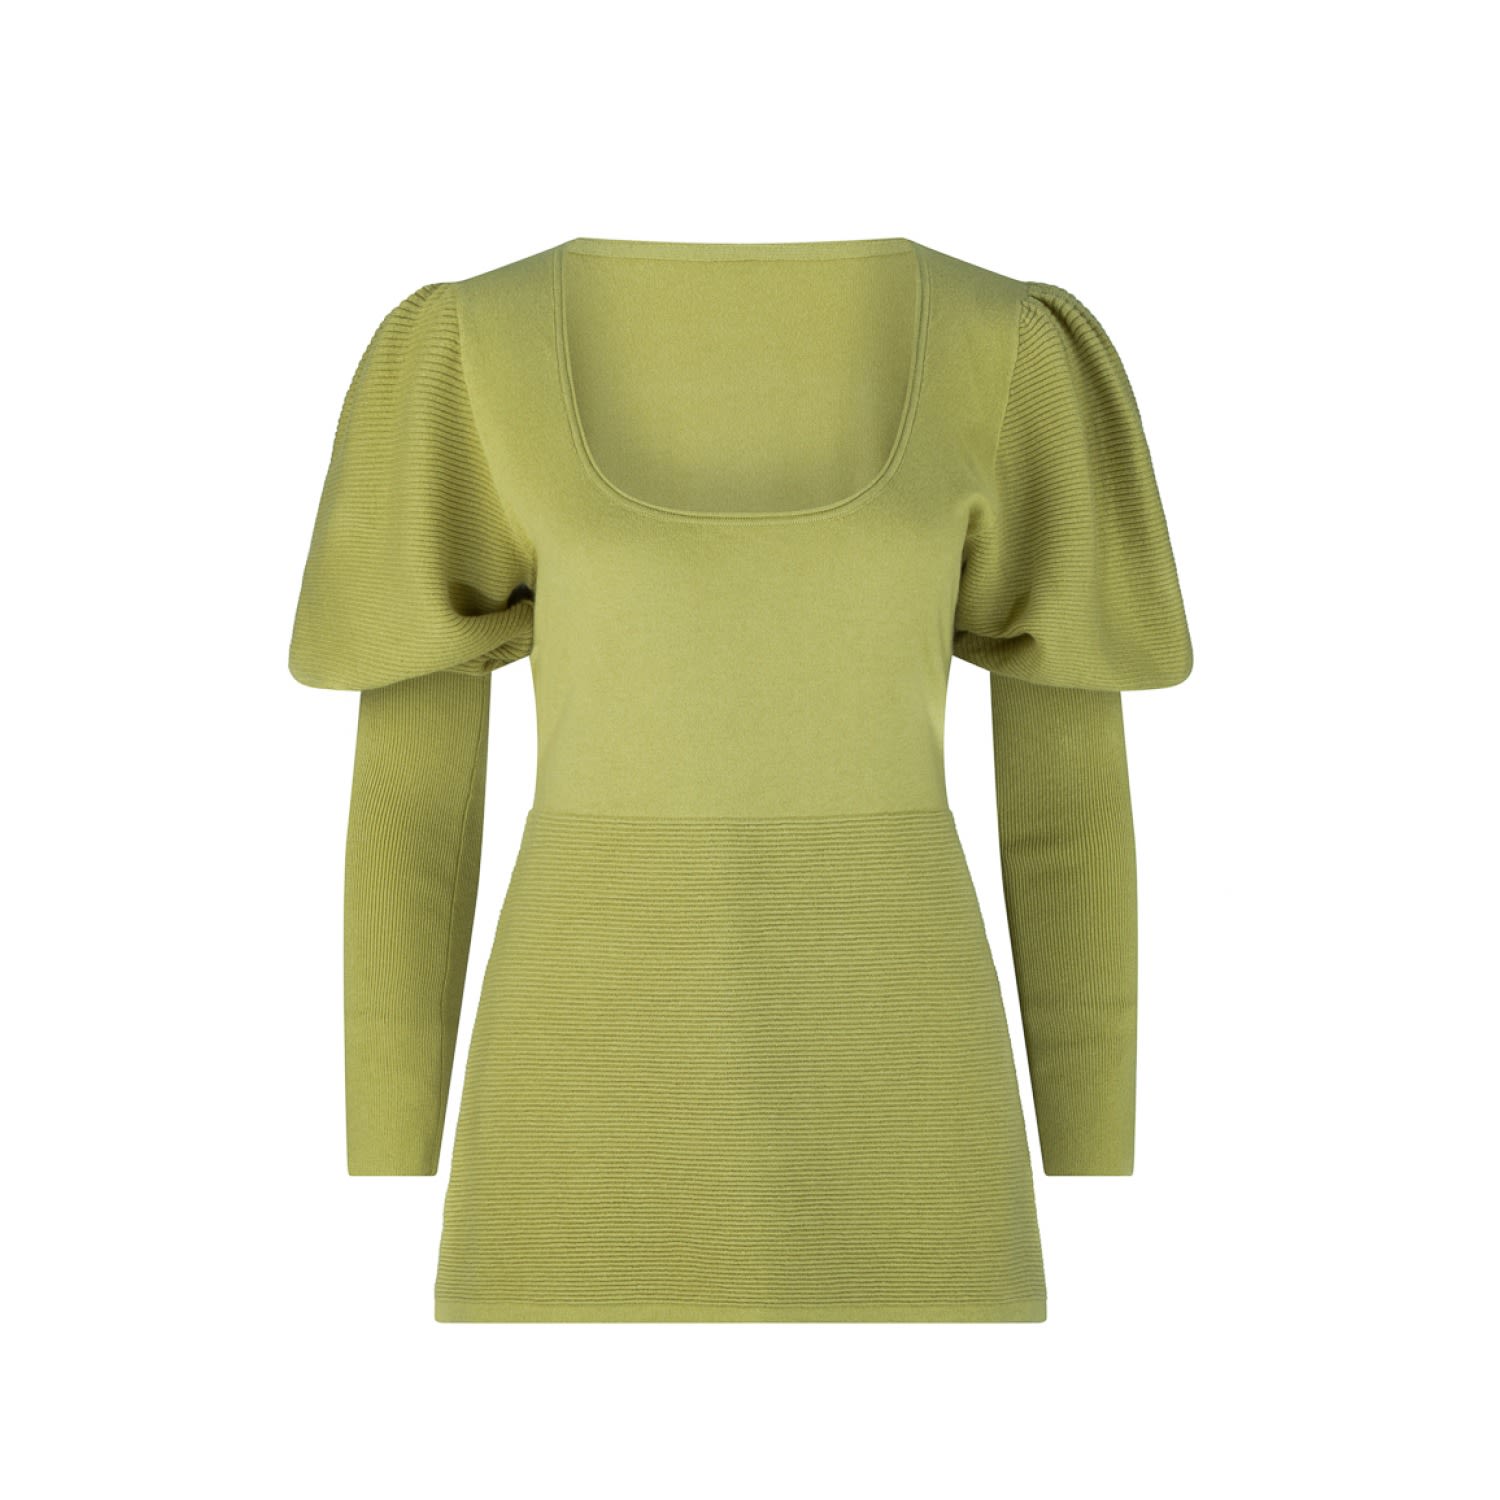 Dref By D Women's Green Capri Bci Cotton Cashmere Top - Olive